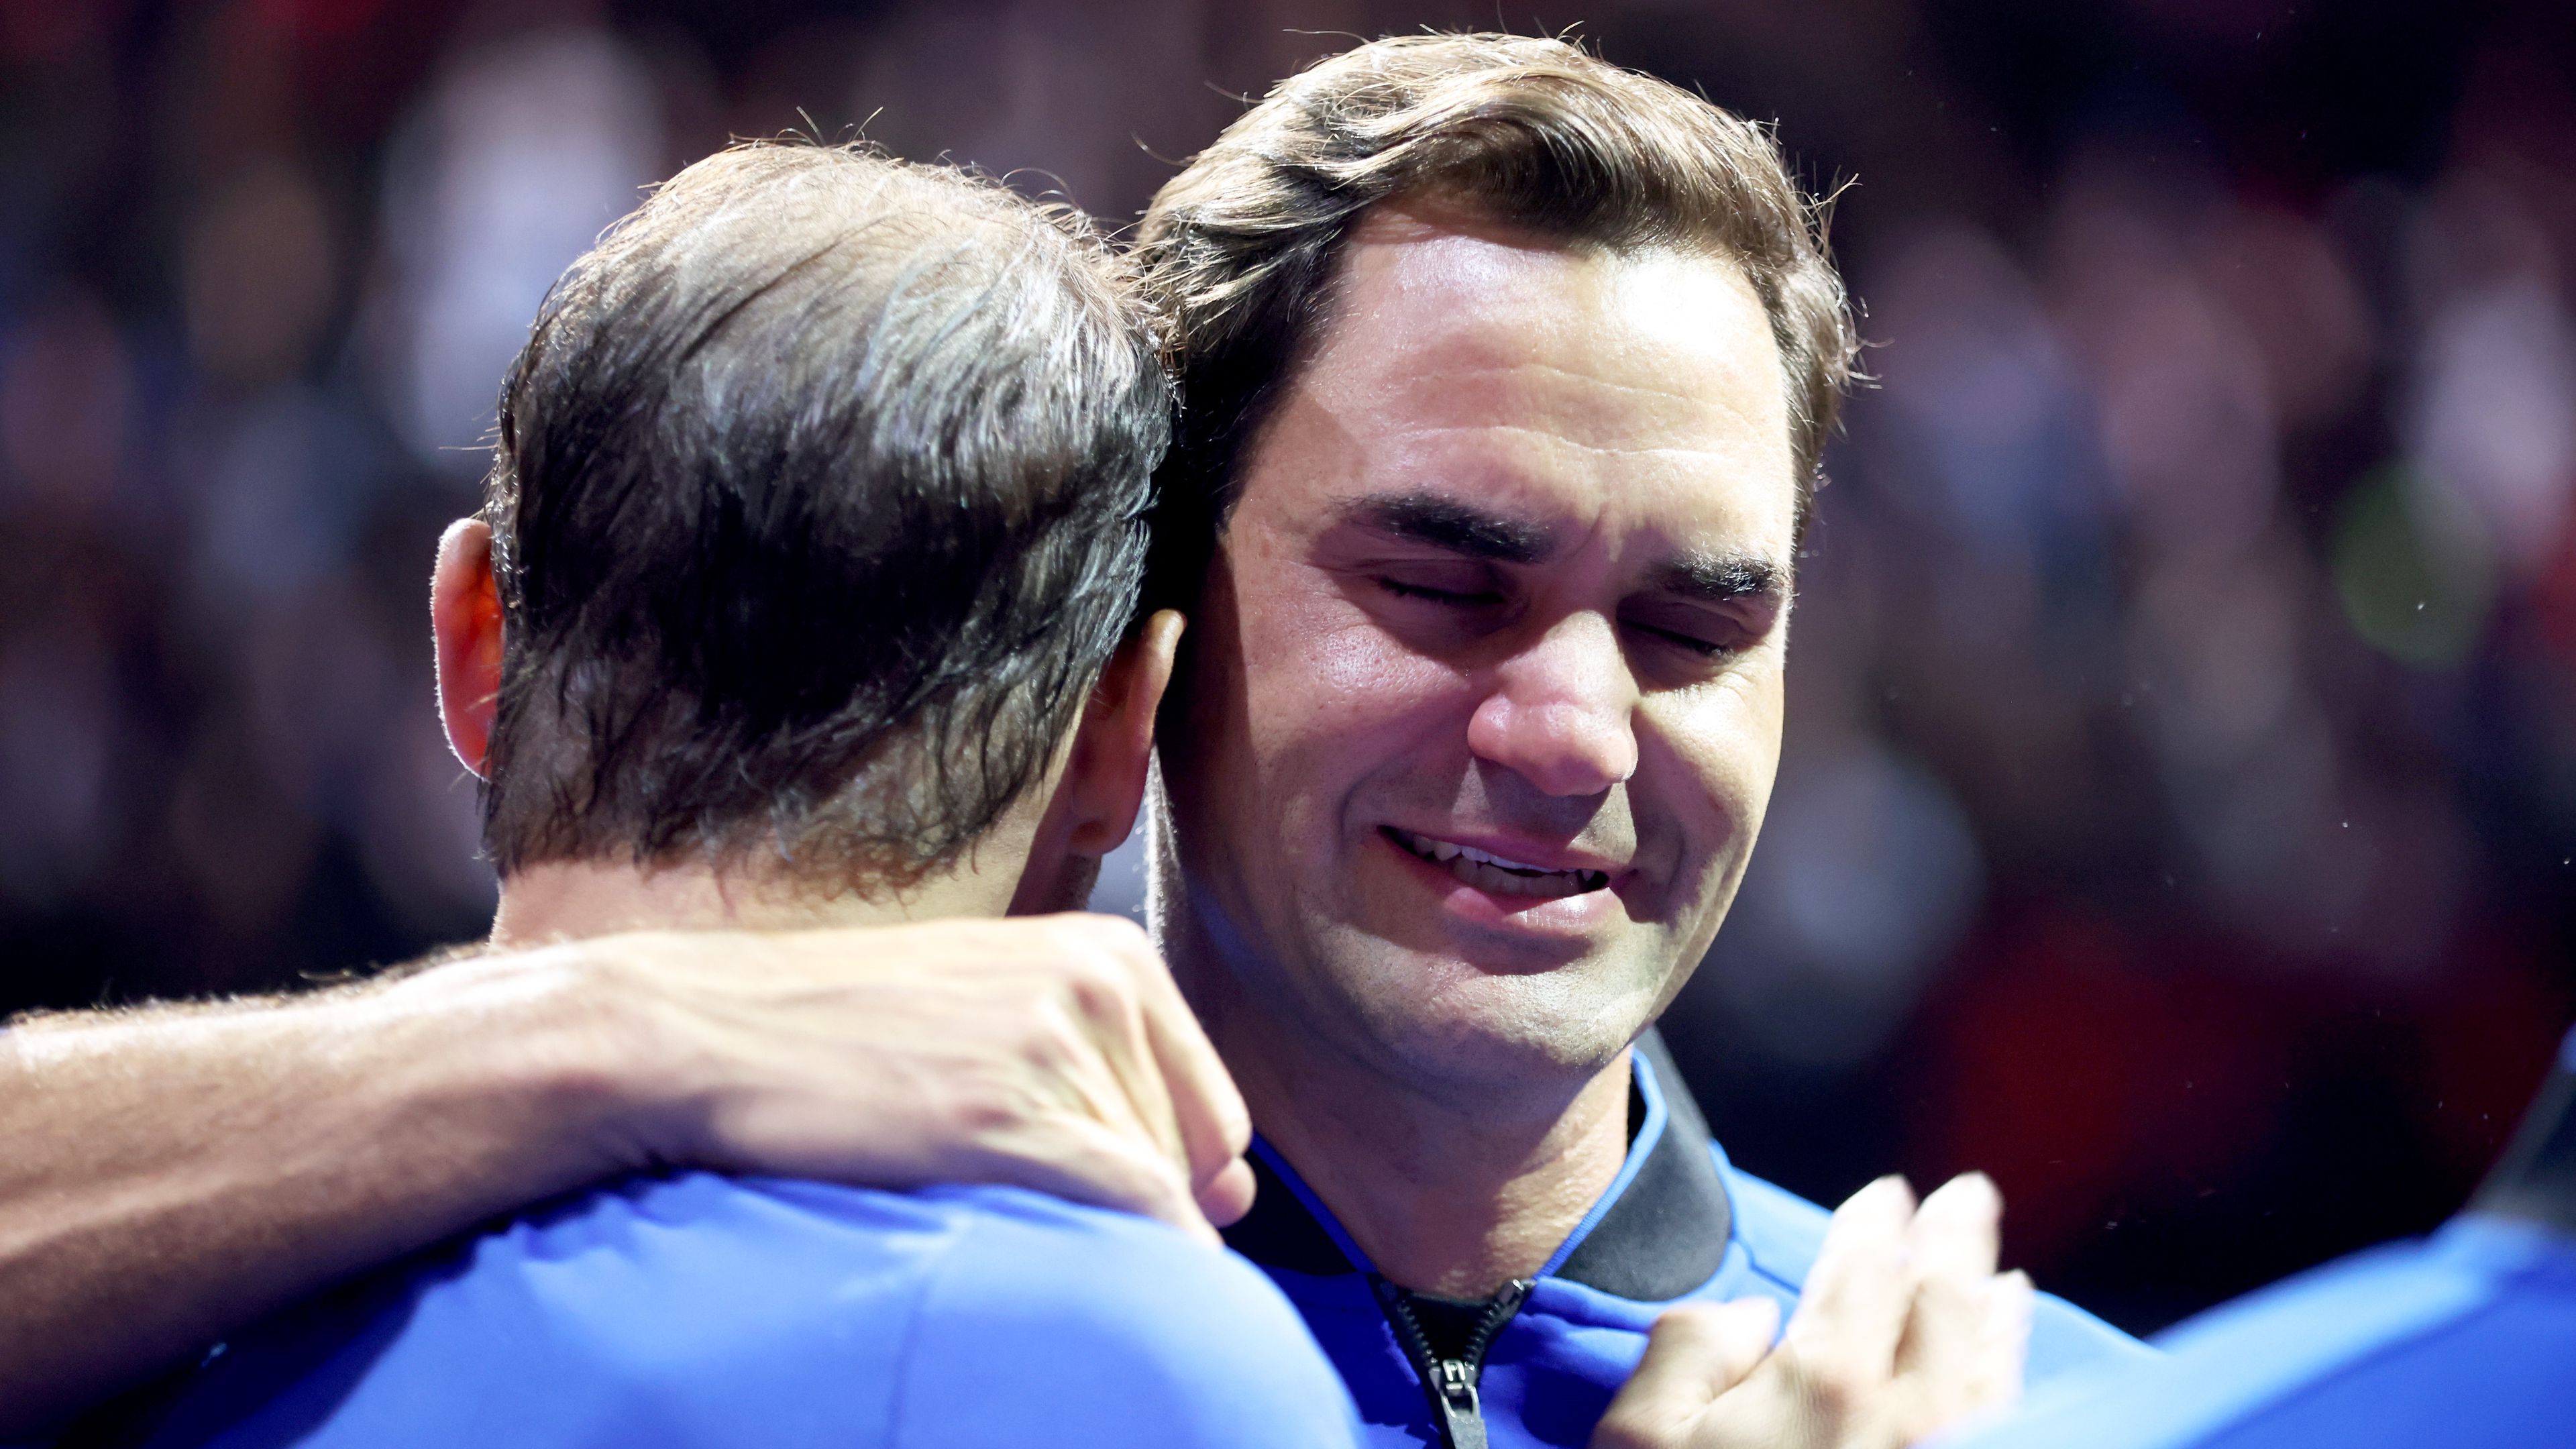 Tavalyi búcsúján Federer zokogva borult könnyeit törülgető barátja nyakába (Fotó: Getty Images)